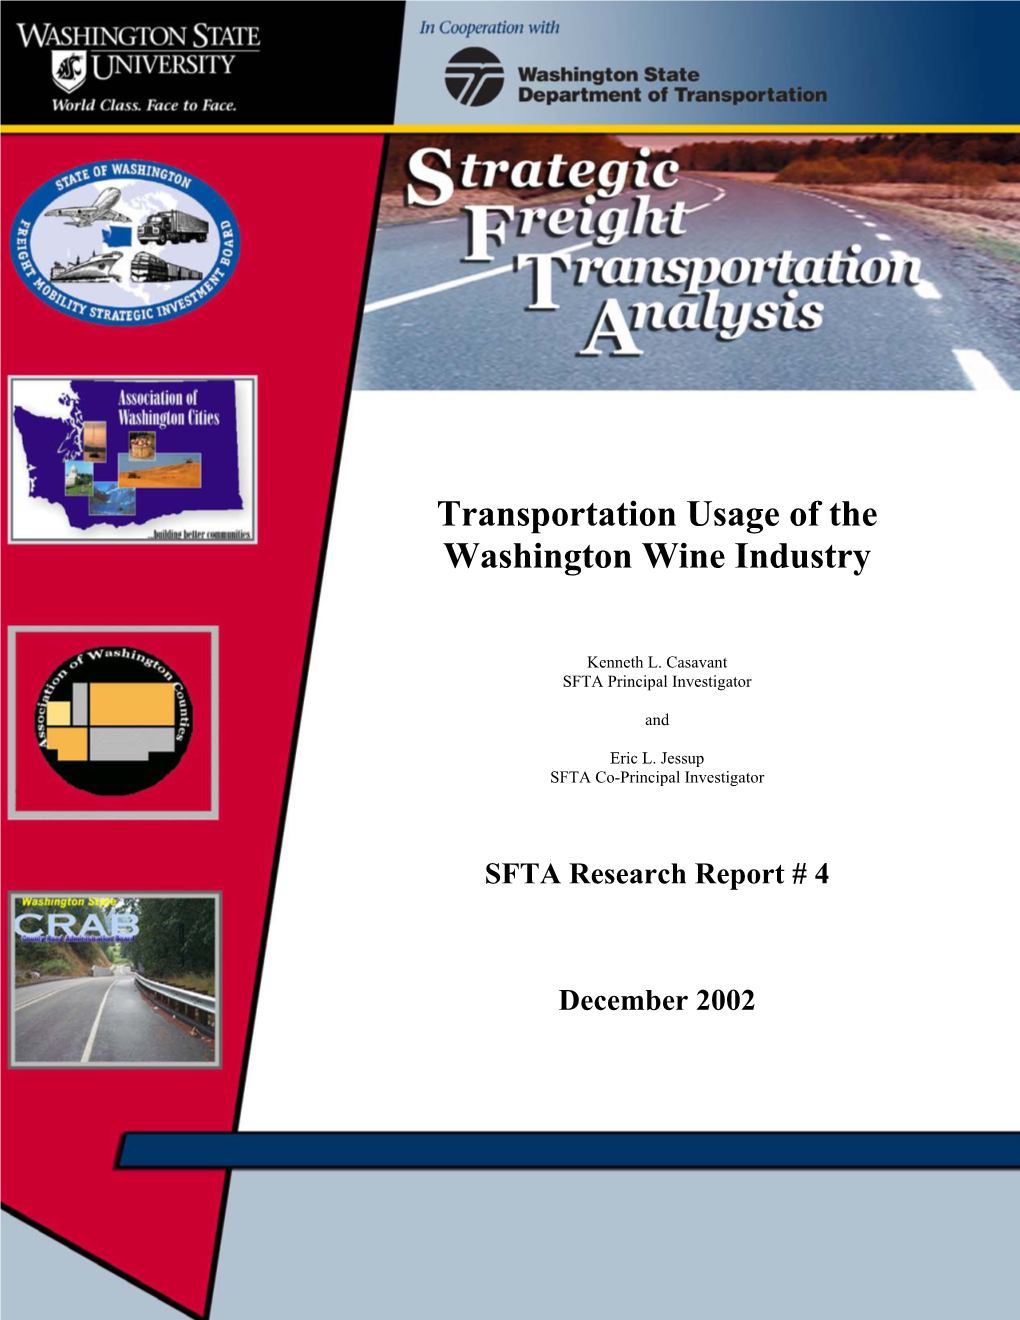 Transportation Usage of the Washington Wine Industry